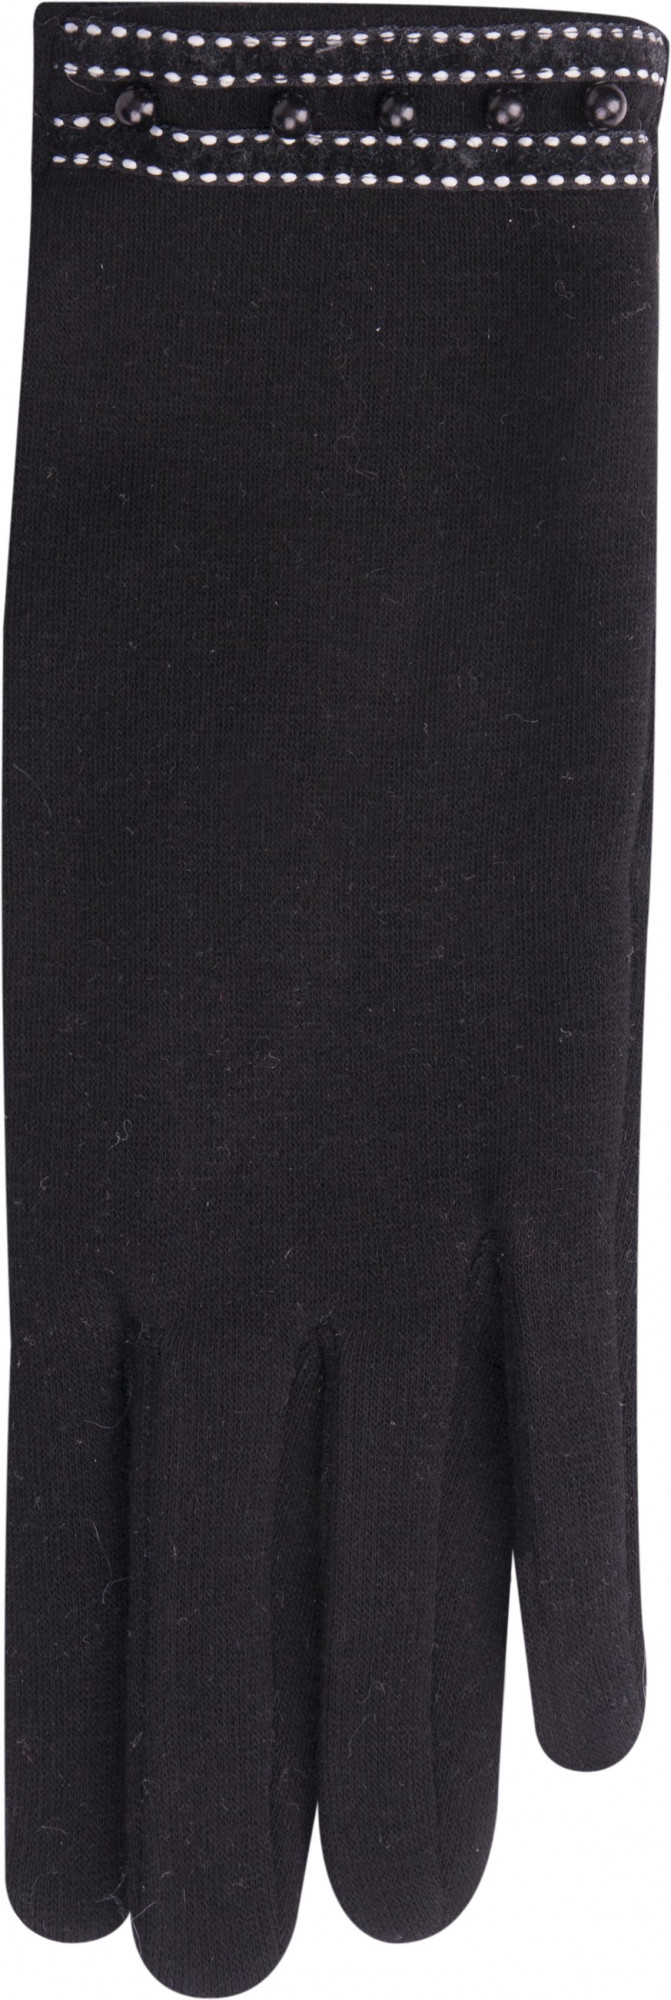 Dámské rukavice R-138 černá - Yoclub černá 24 cm